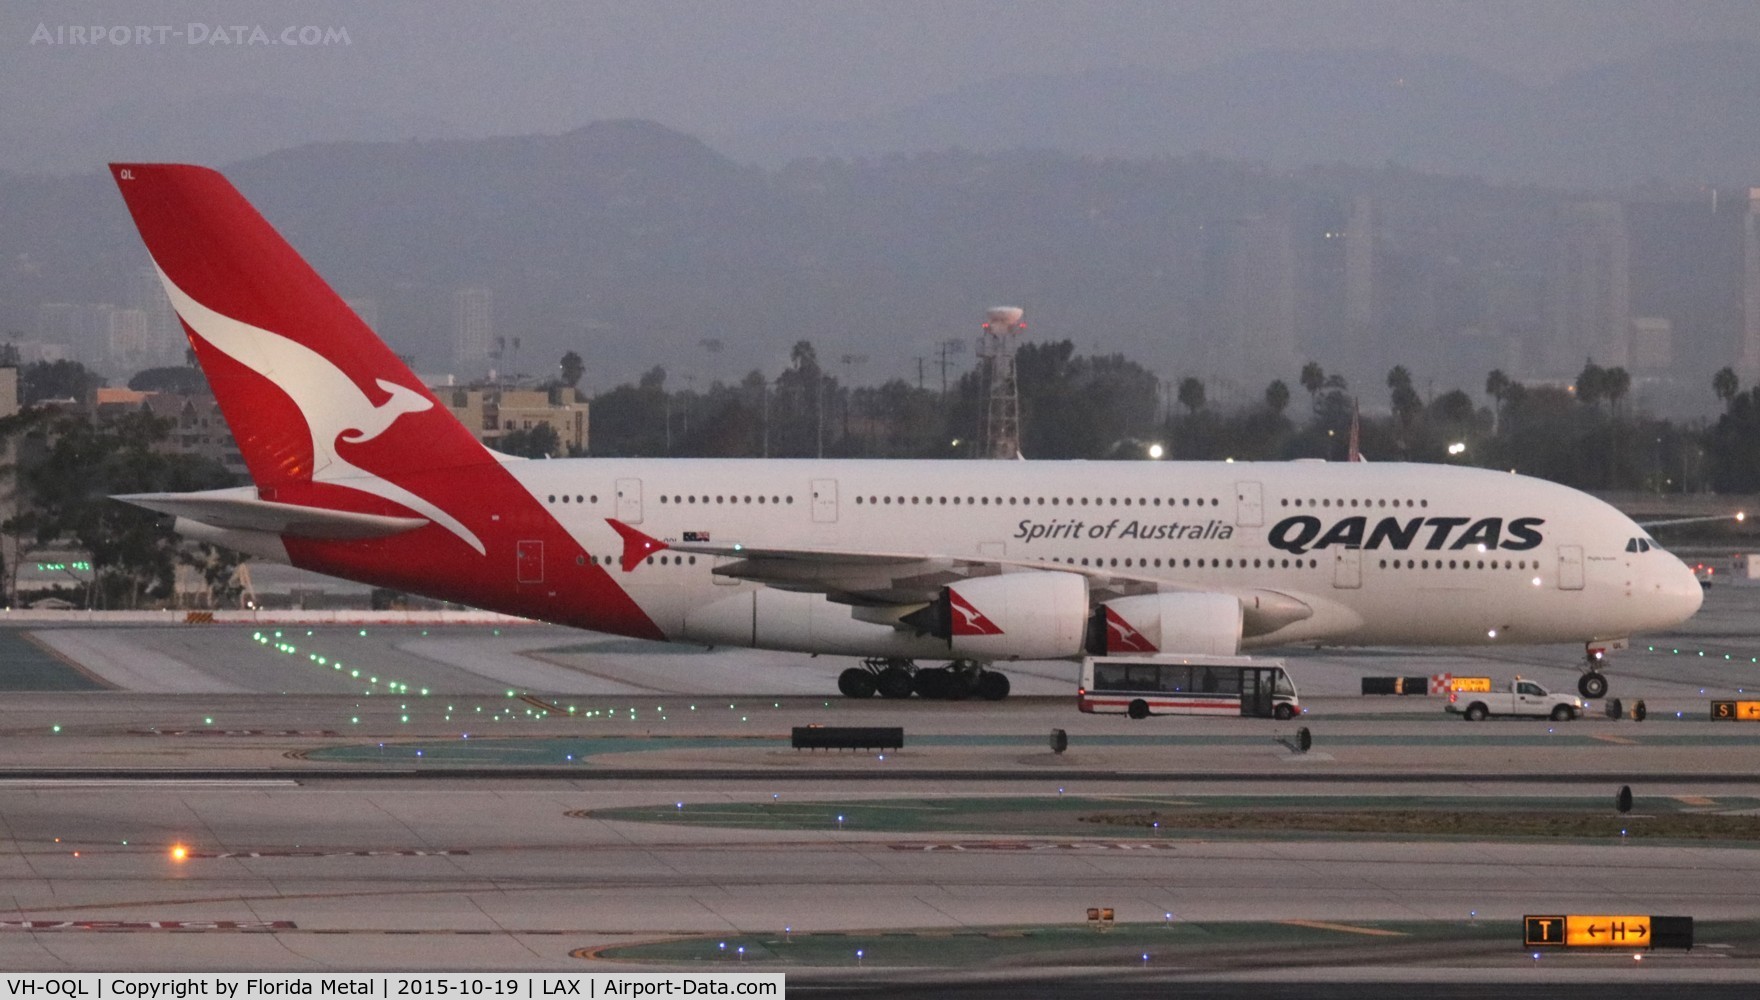 VH-OQL, 2011 Airbus A380-842 C/N 074, Qantas A380